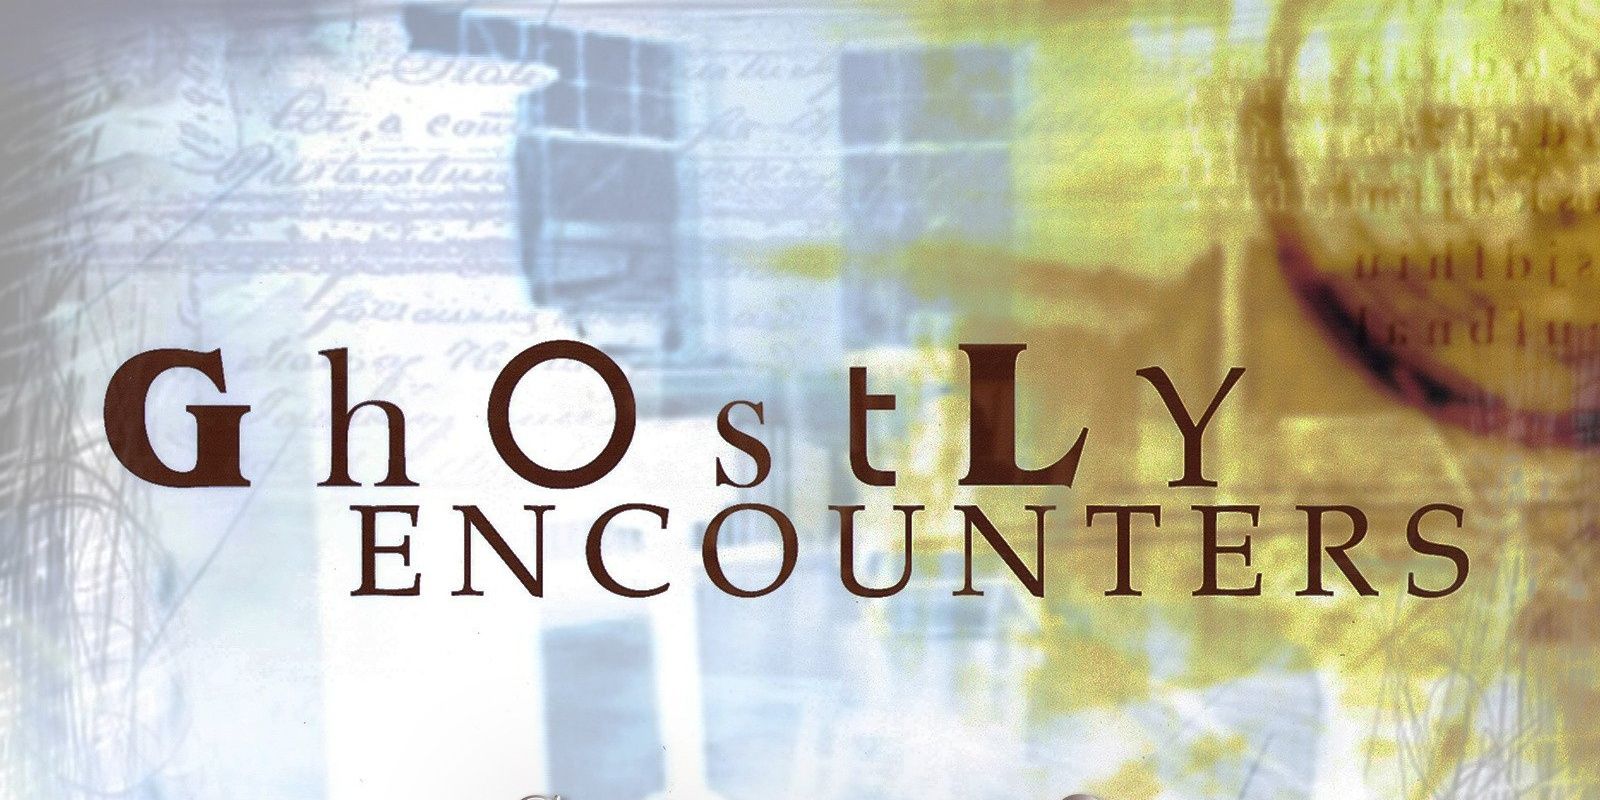 Cartão de título da segunda temporada de Ghostly Encounters Recortado